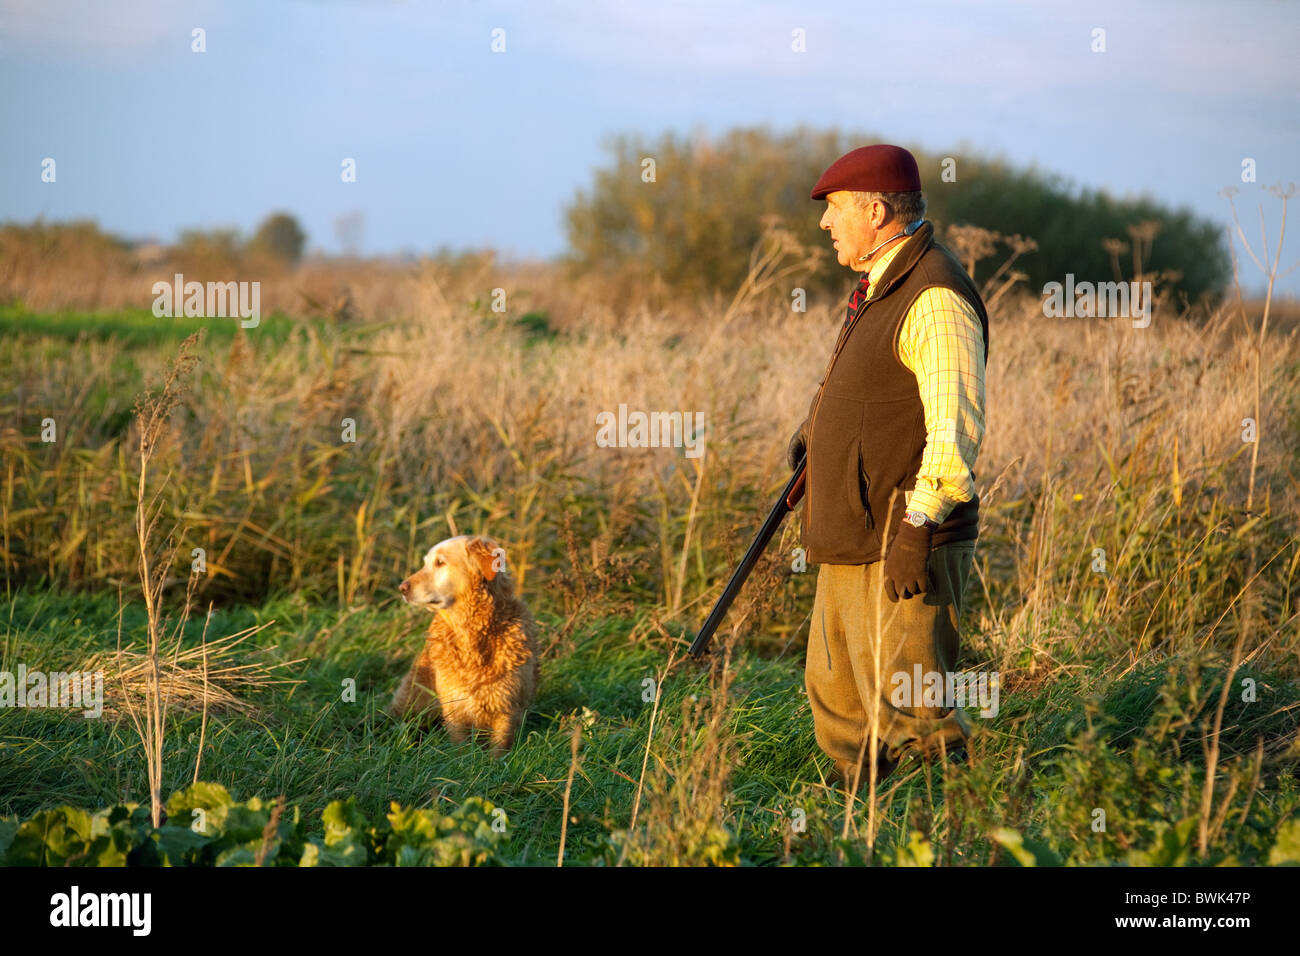 Un Shooter (GUN) y su gundog esperando la caza de aves se elevó en un rodaje, Cambridgeshire, Reino Unido Foto de stock